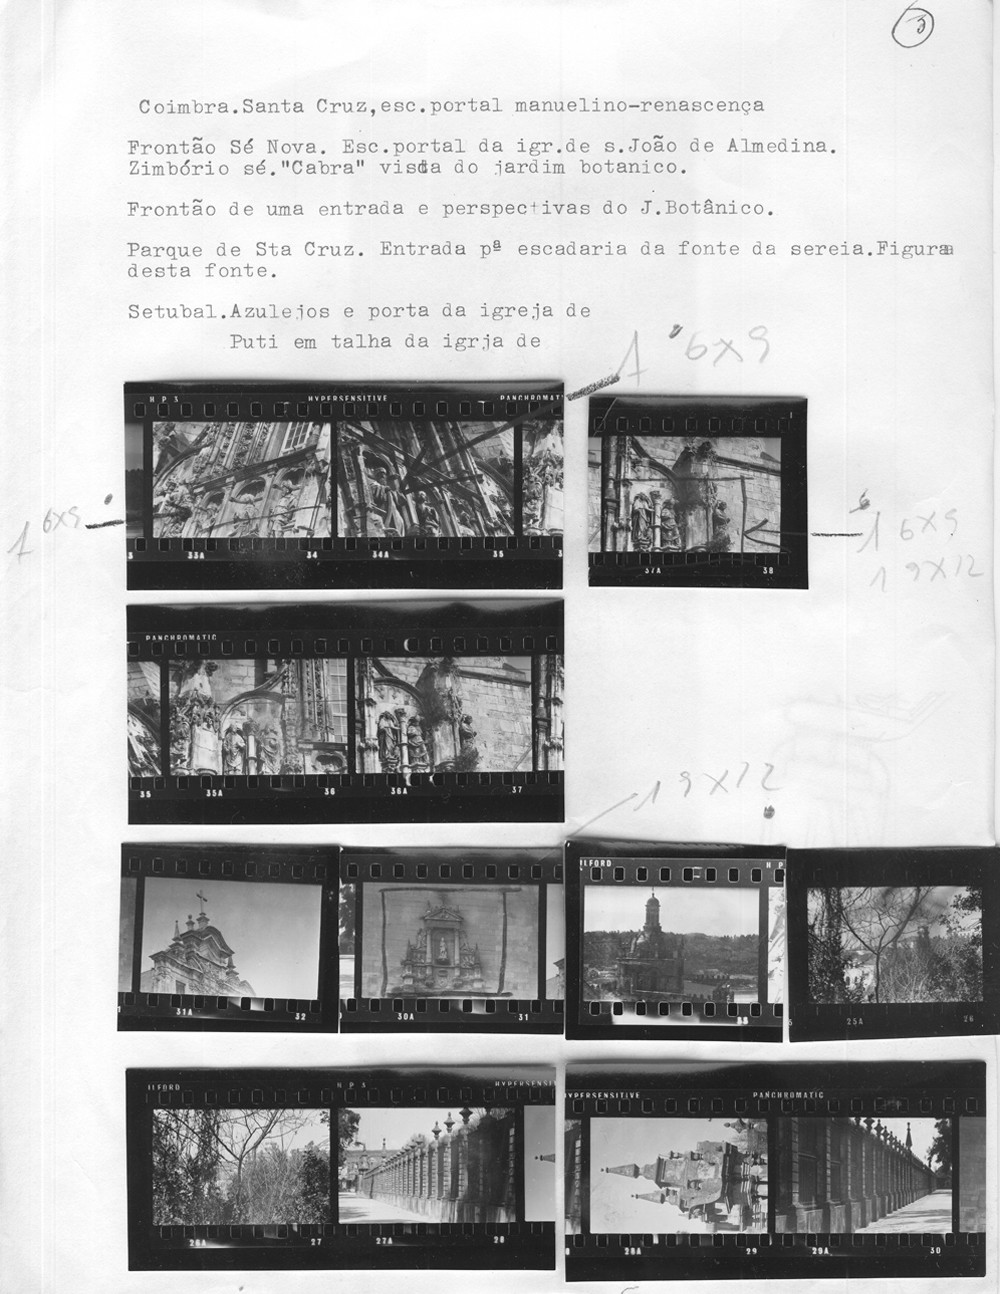  Estudos comparativos de escultura portuguesa (relatório para a Fundação Calouste Gulbenkian), c. 1966. 